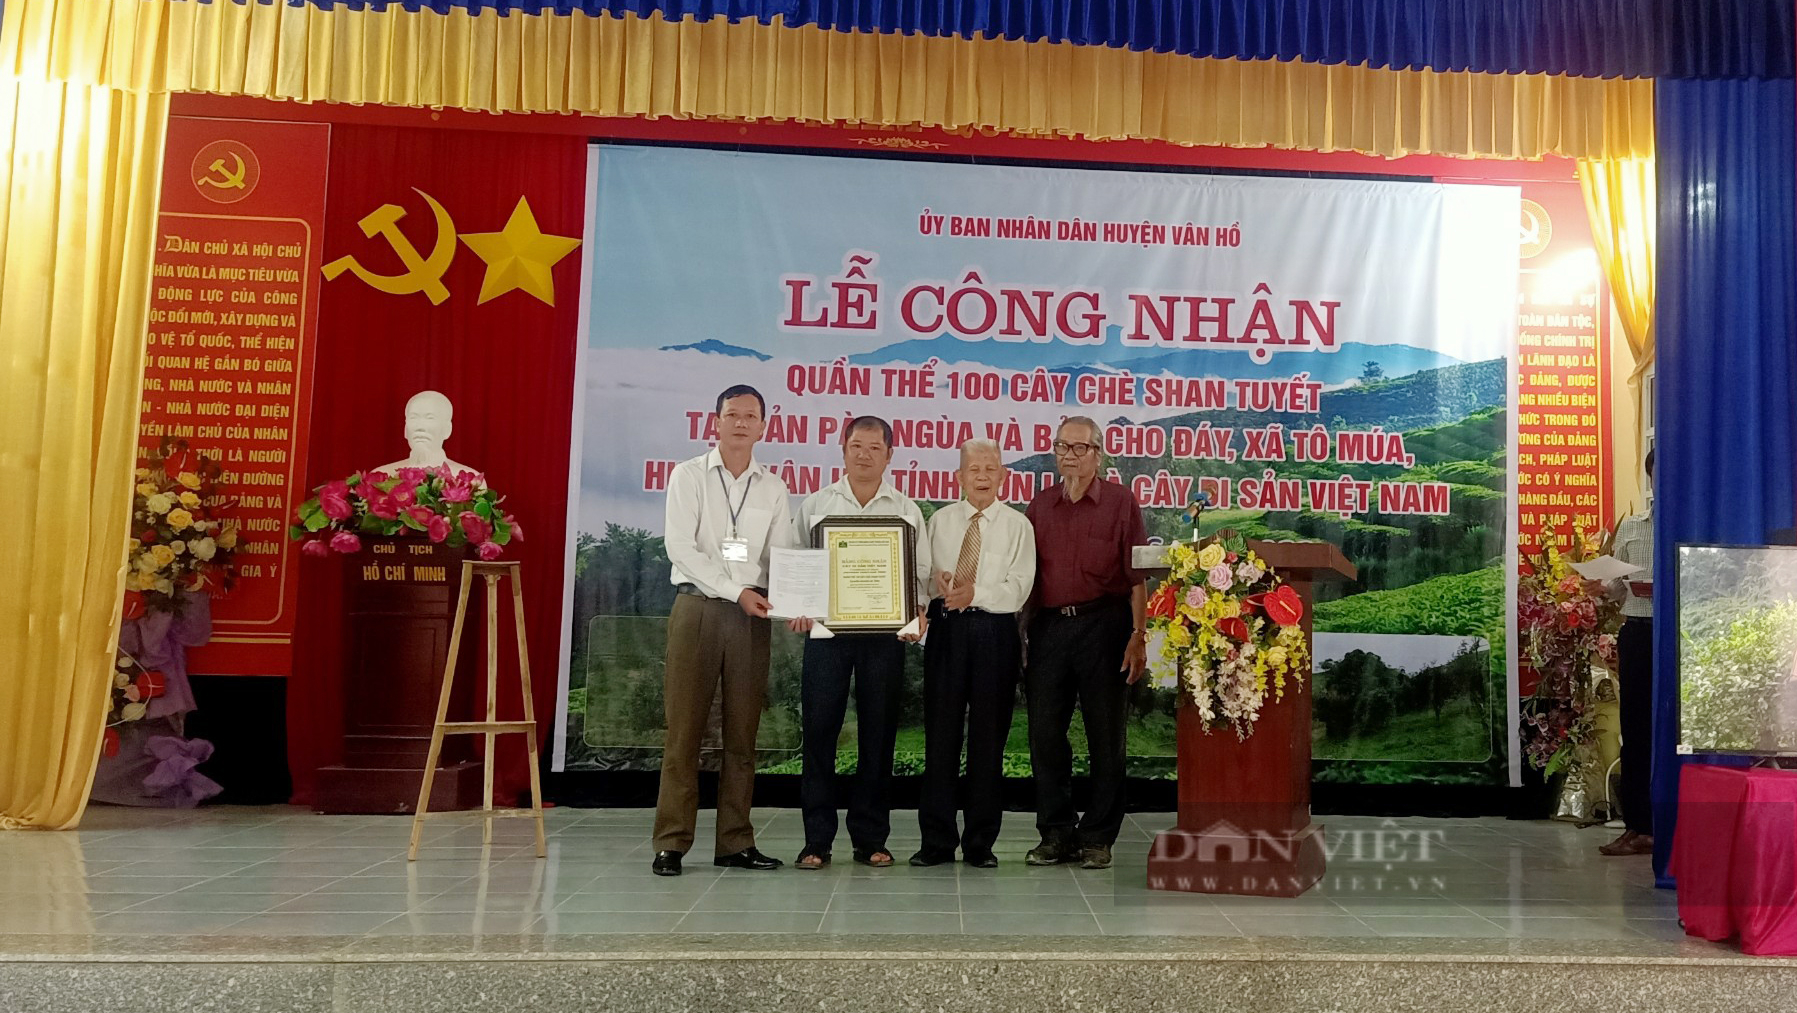 Sơn La: 100 cây chè Shan tuyết ở Vân Hồ được công nhận Cây Di sản Việt Nam - Ảnh 1.